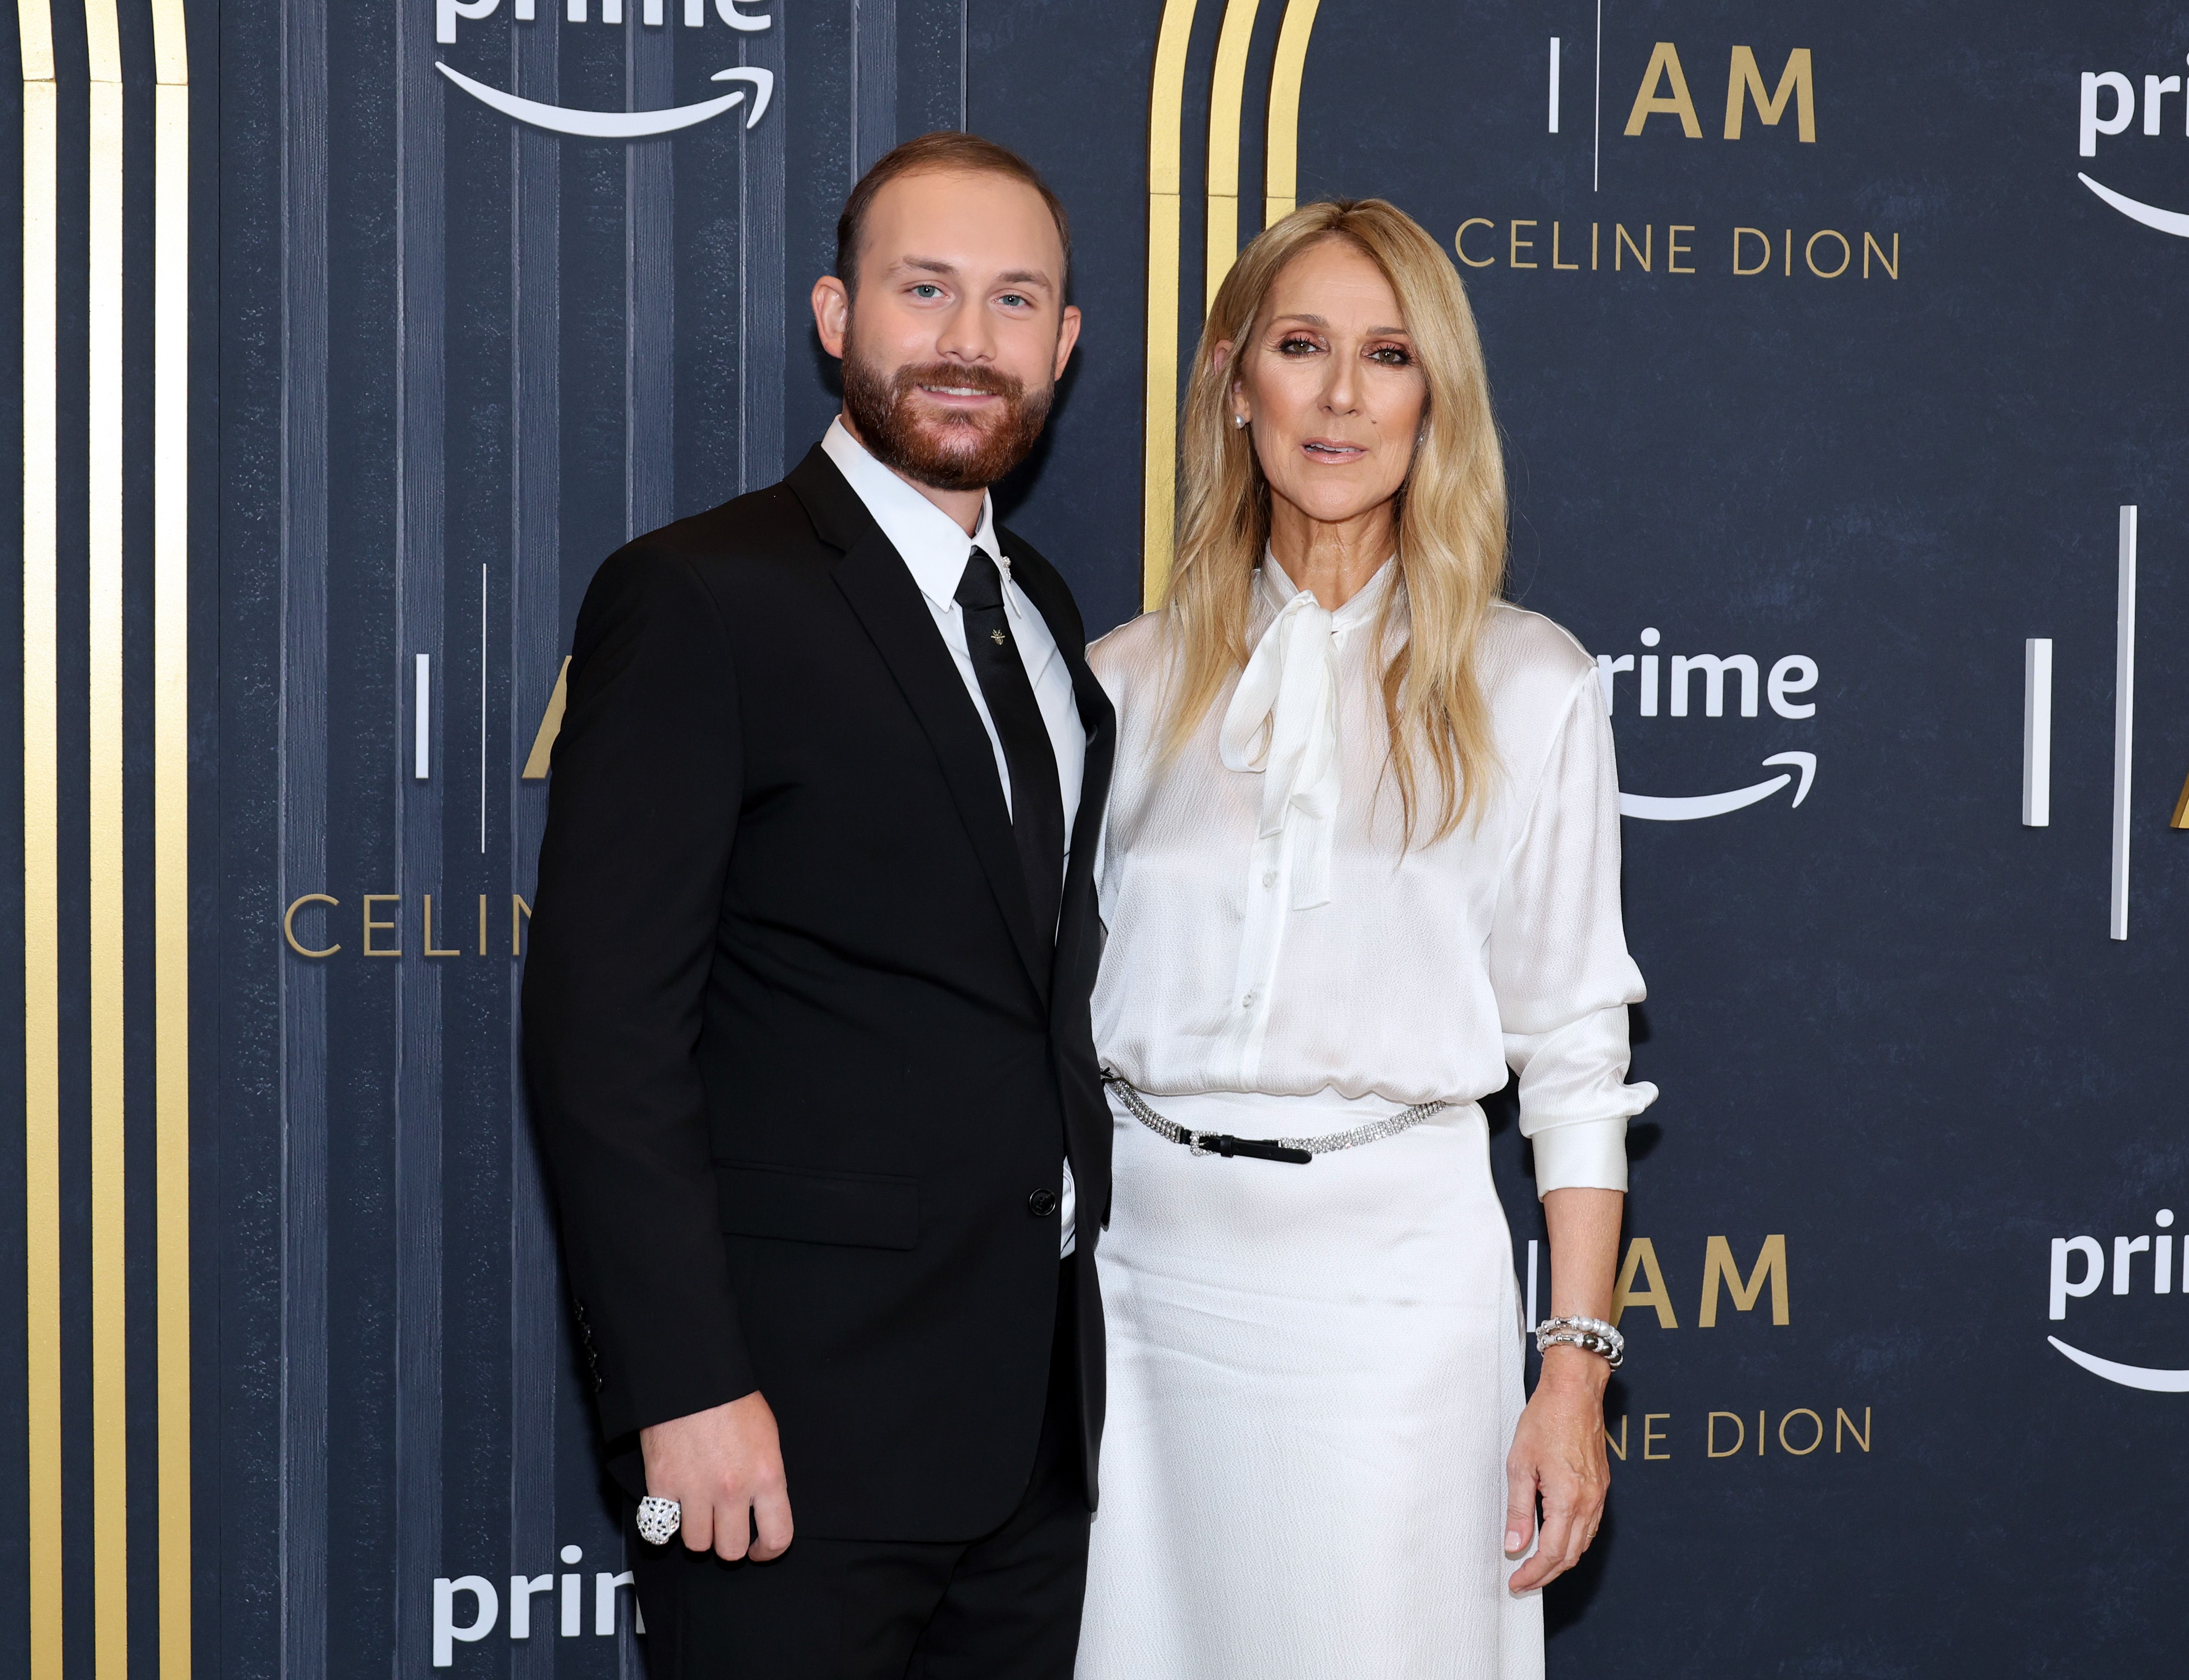 René-Charles Angélil y Céline Dion en la proyección especial de "I Am: Celine Dion" en Nueva York el 17 de junio de 2024 | Fuente: Getty Images